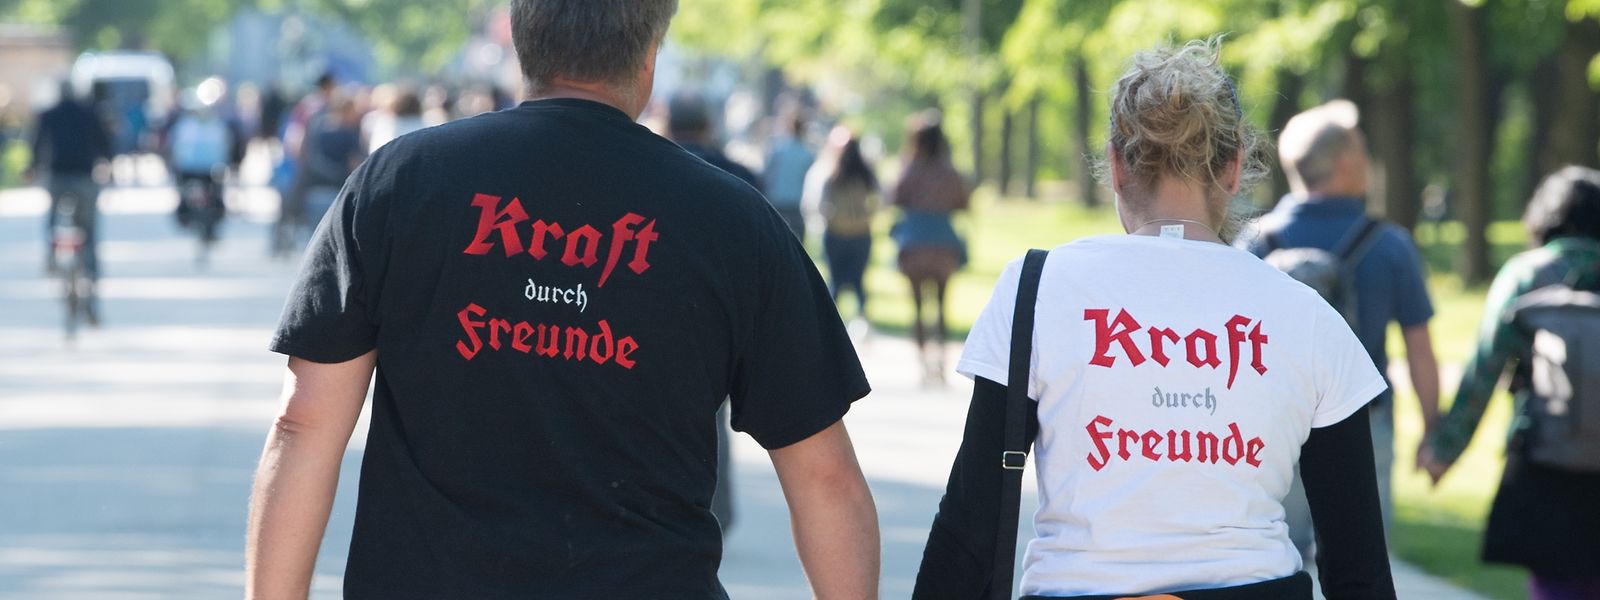 Dresden: Teilnehmer einer Kundgebung tragen T-Shirts mit Neonazi-Slogans.